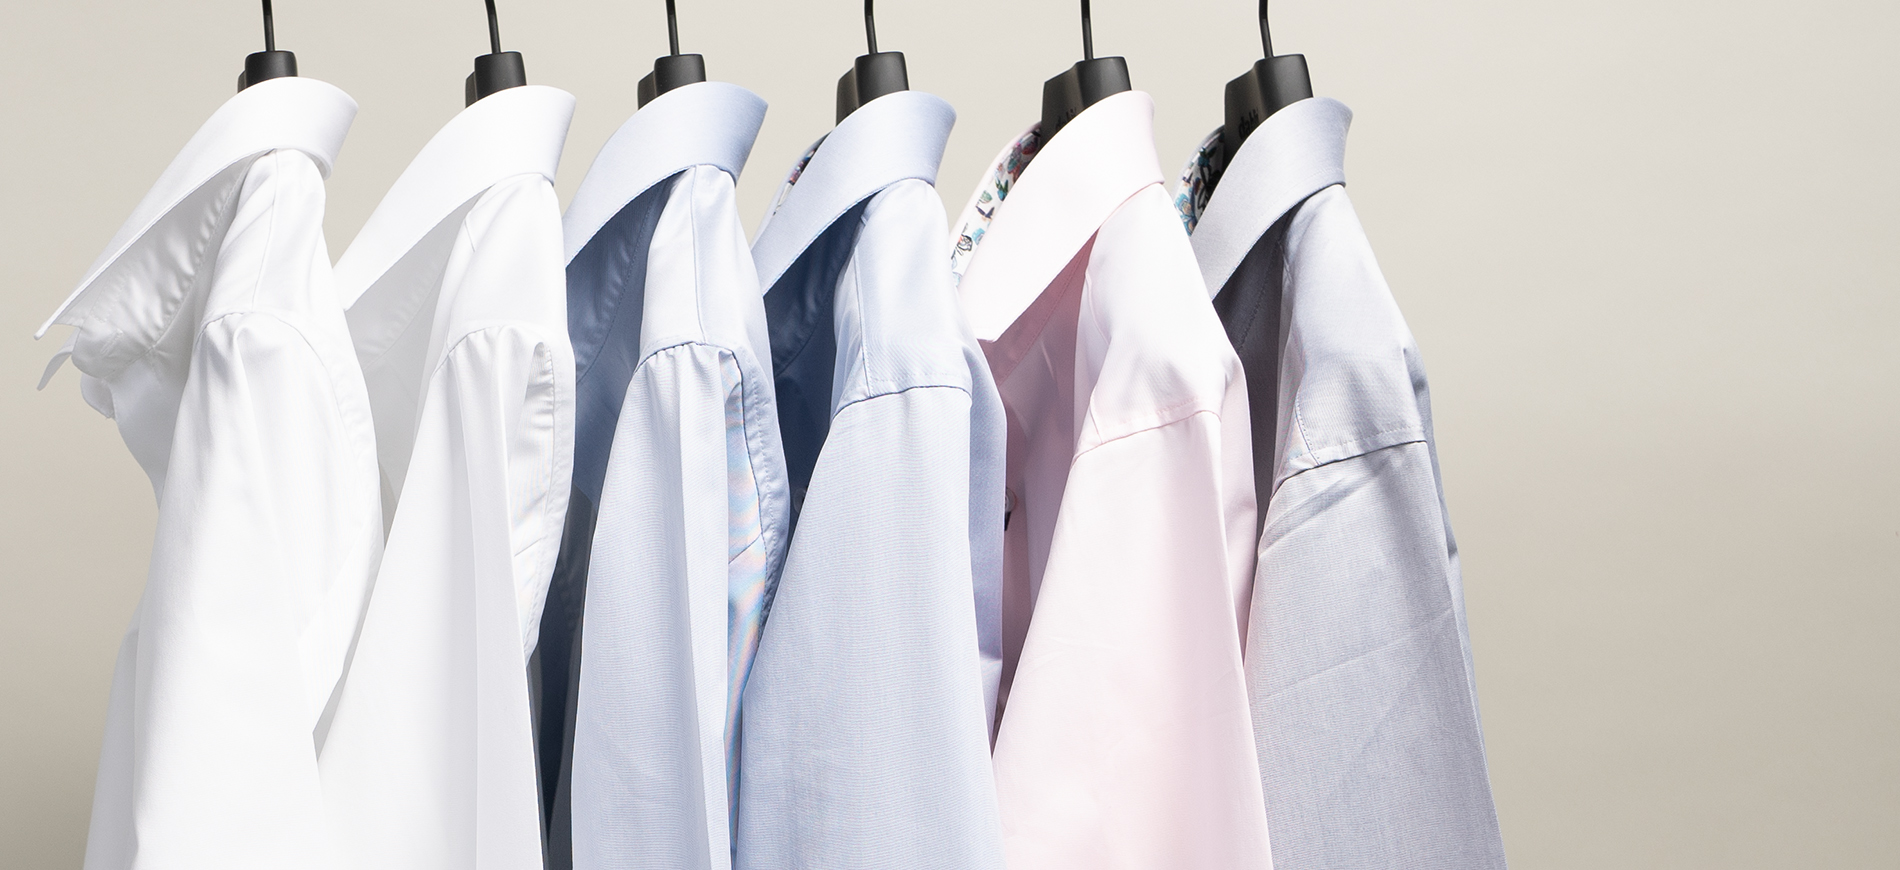 Tvättråd skjortor: Så tvättar du din skjorta på bästa vis